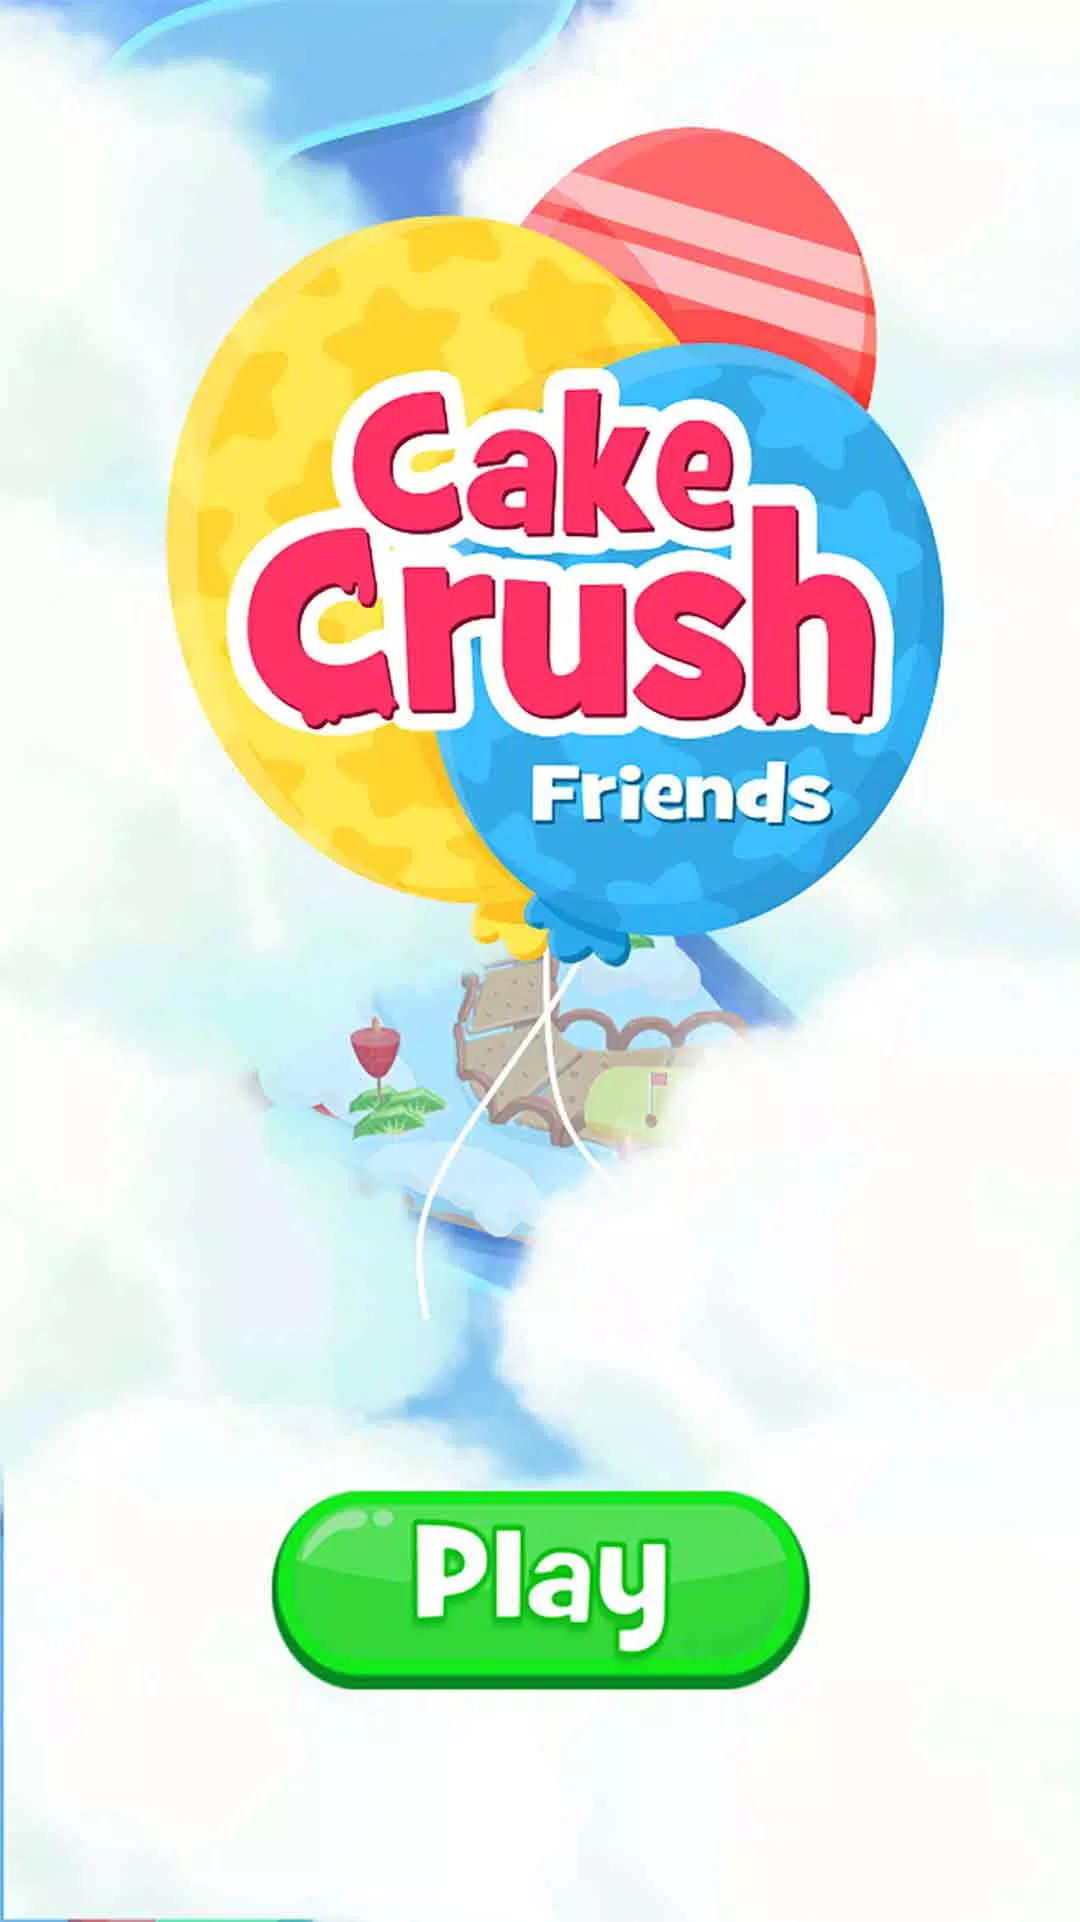 Cookie Clouds 🍬 Level 7 🍬 Candy Crush FRIENDS Saga 